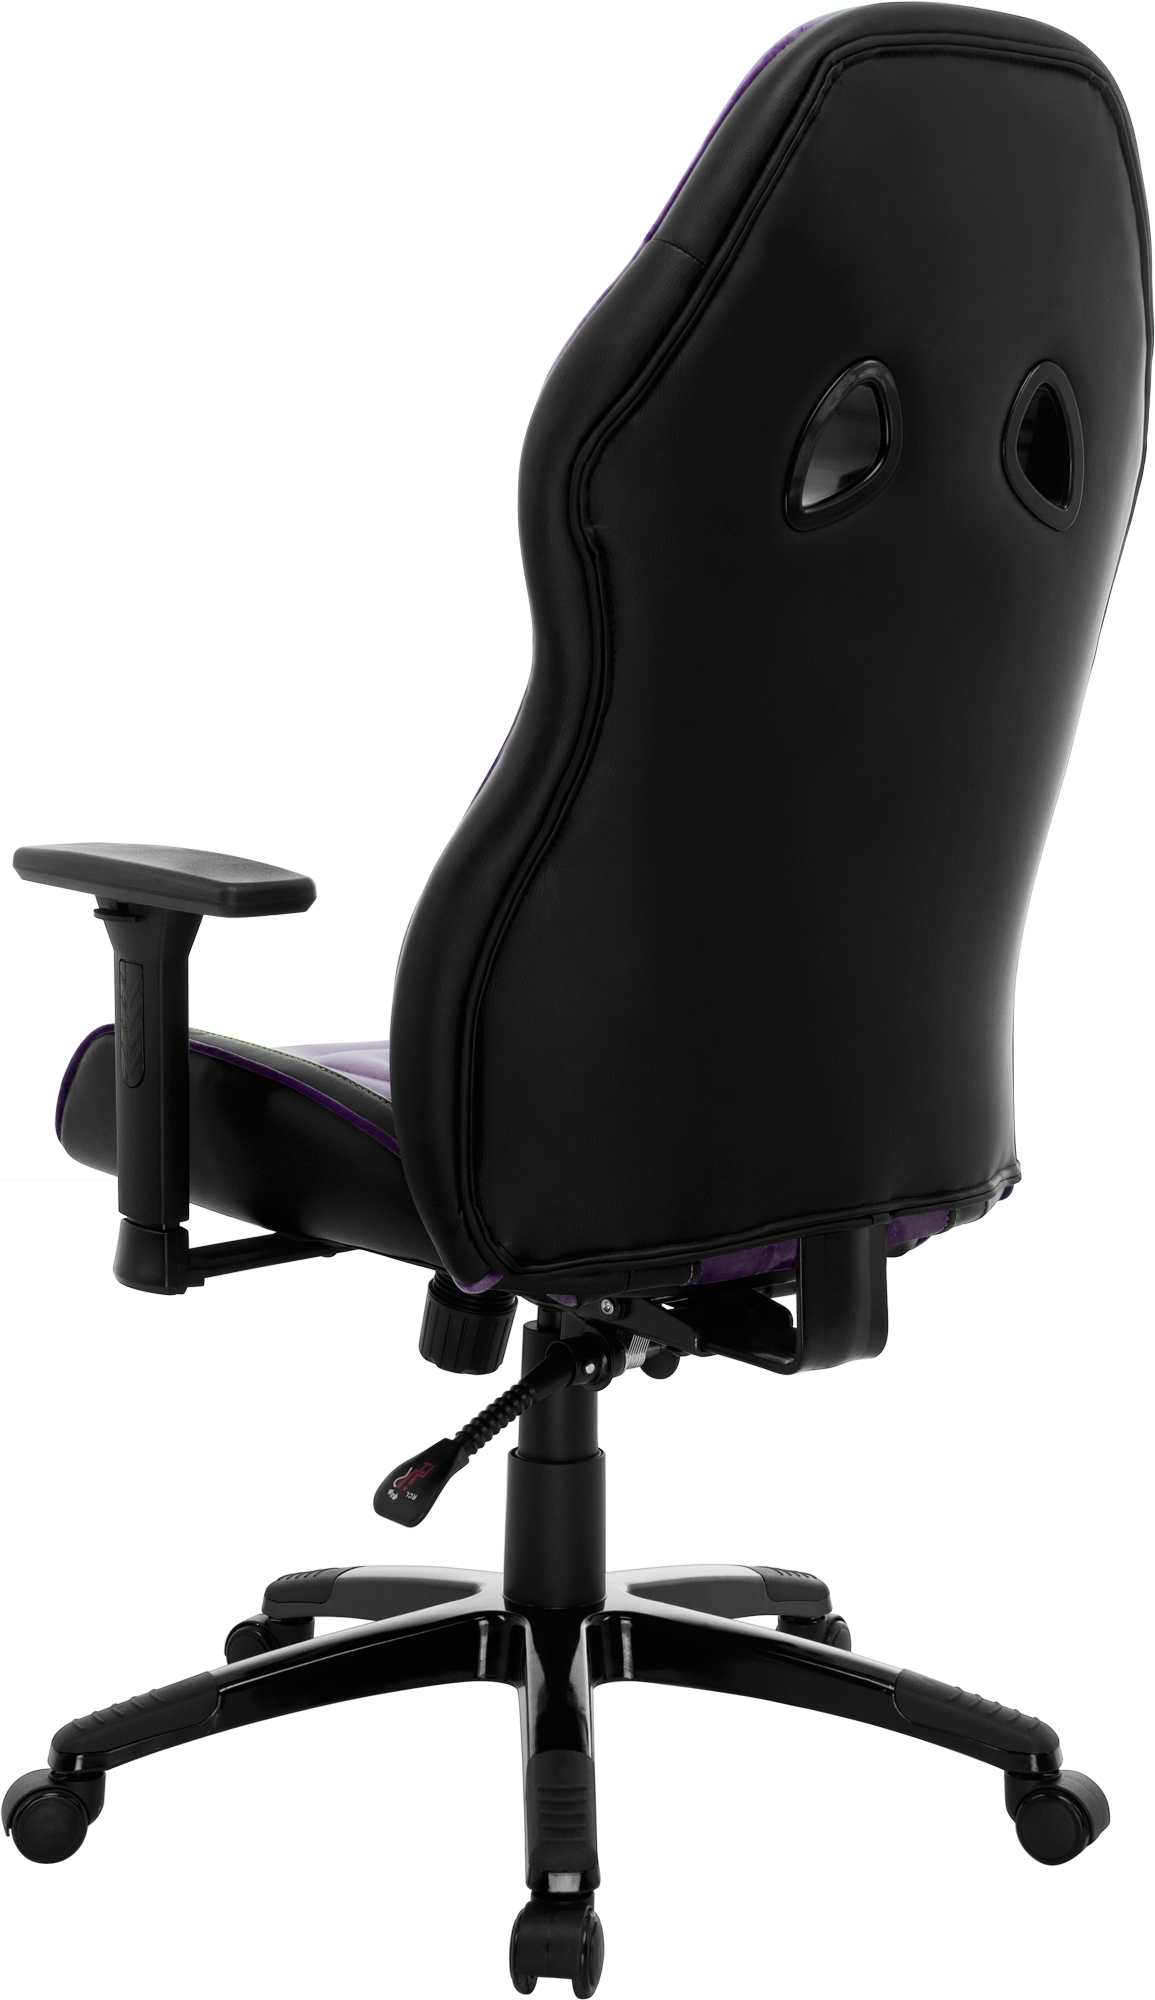 Геймерське крісло GT Racer чорне з фіолетовим (X-2645 Black/Violet) - фото 6